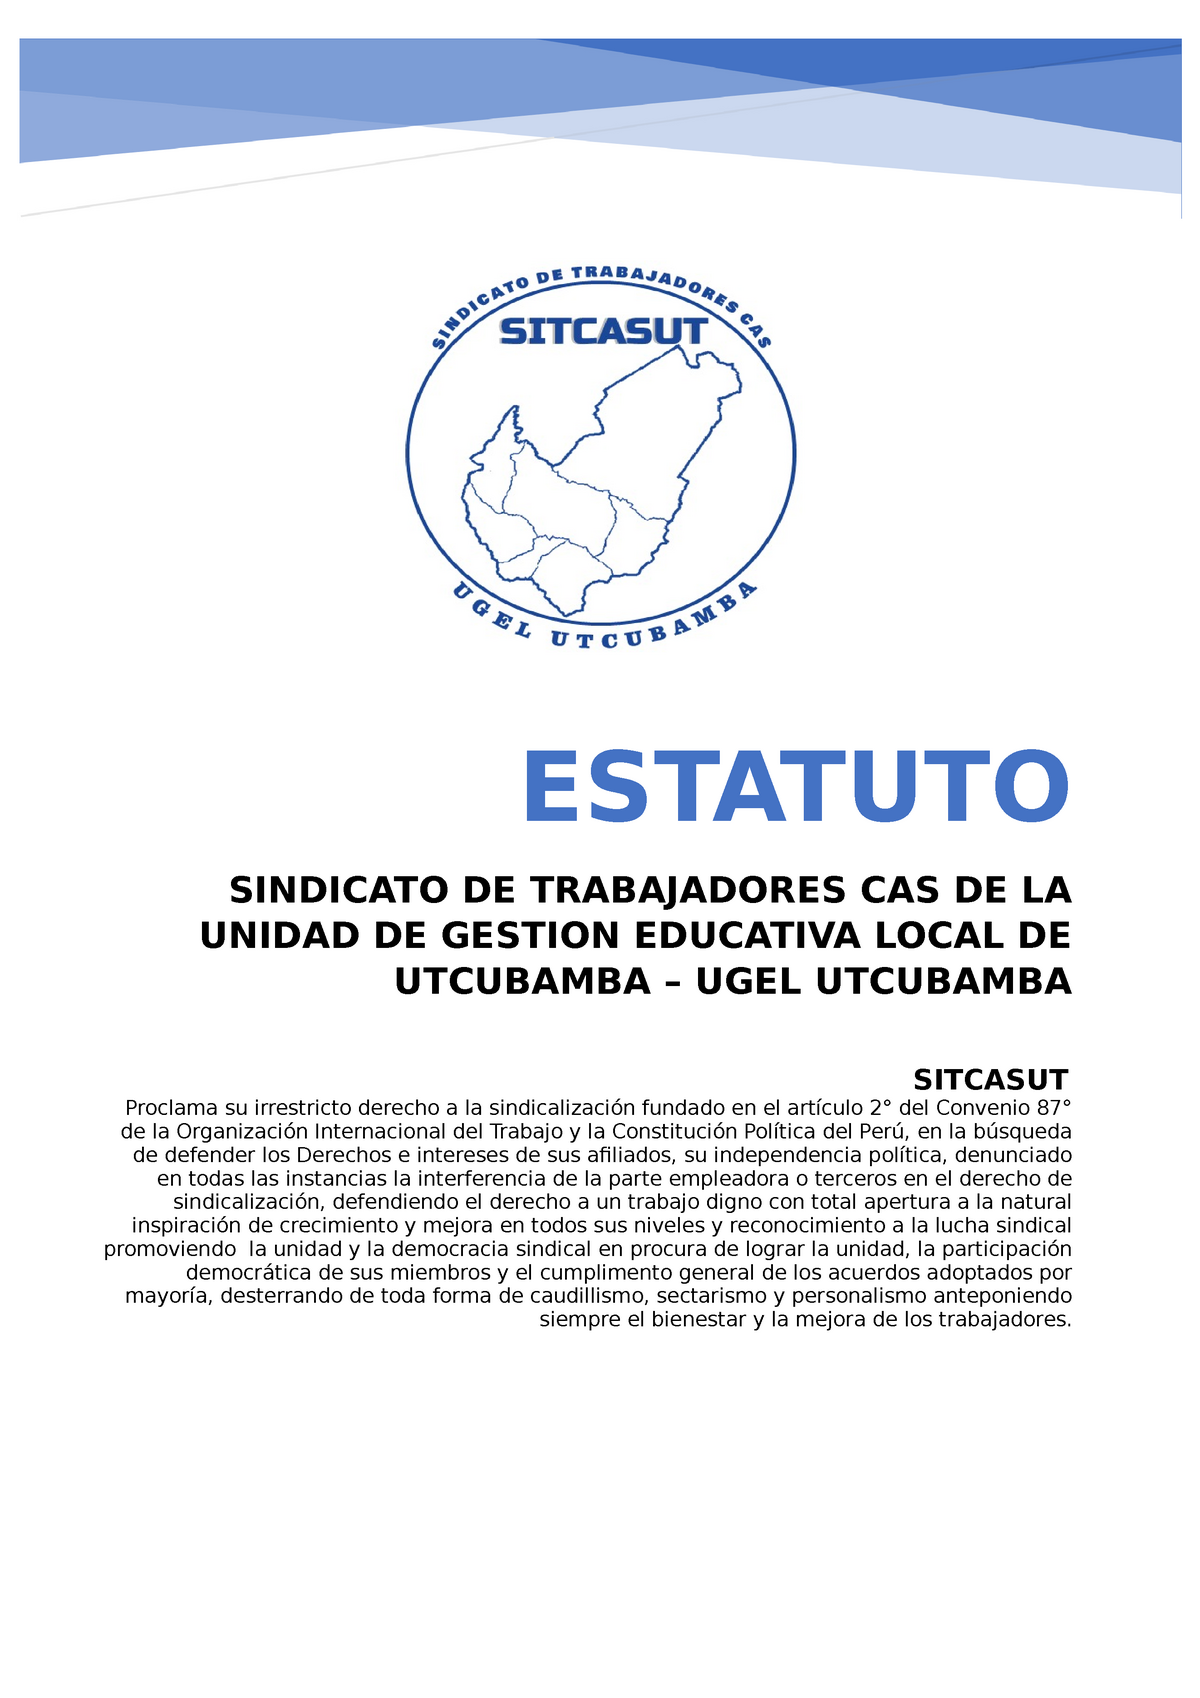 ACTA Y ESTATUTO SINDICATO DE TRABAJADORES CAS UGEL UTCUBAMBA - SITCASUT  Proclama su irrestricto - Studocu